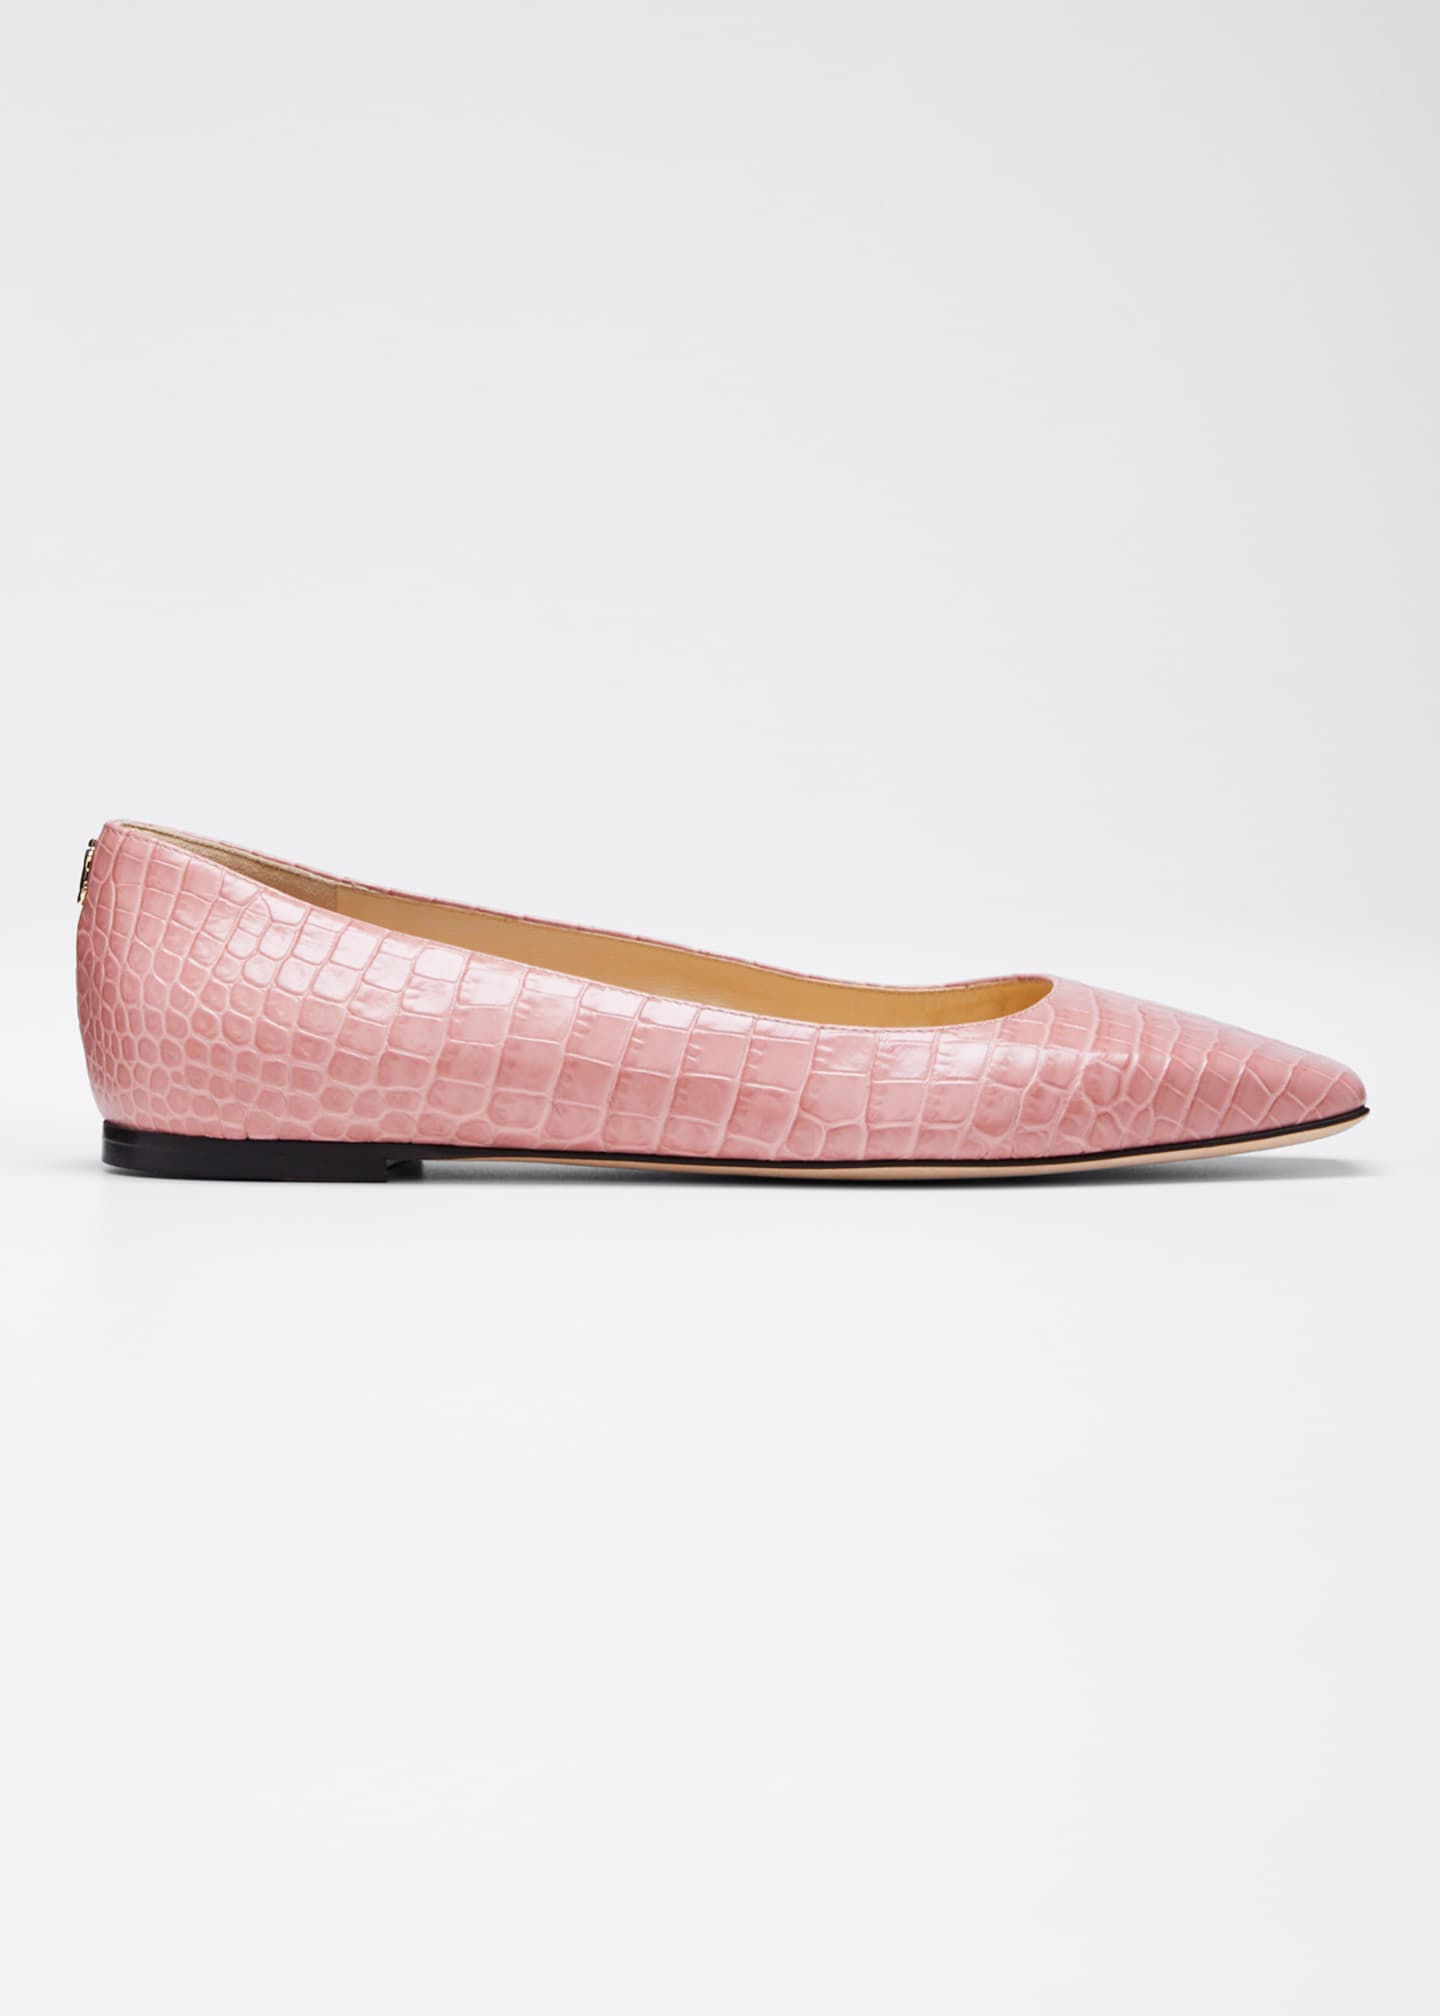 crocs ballet flats pink